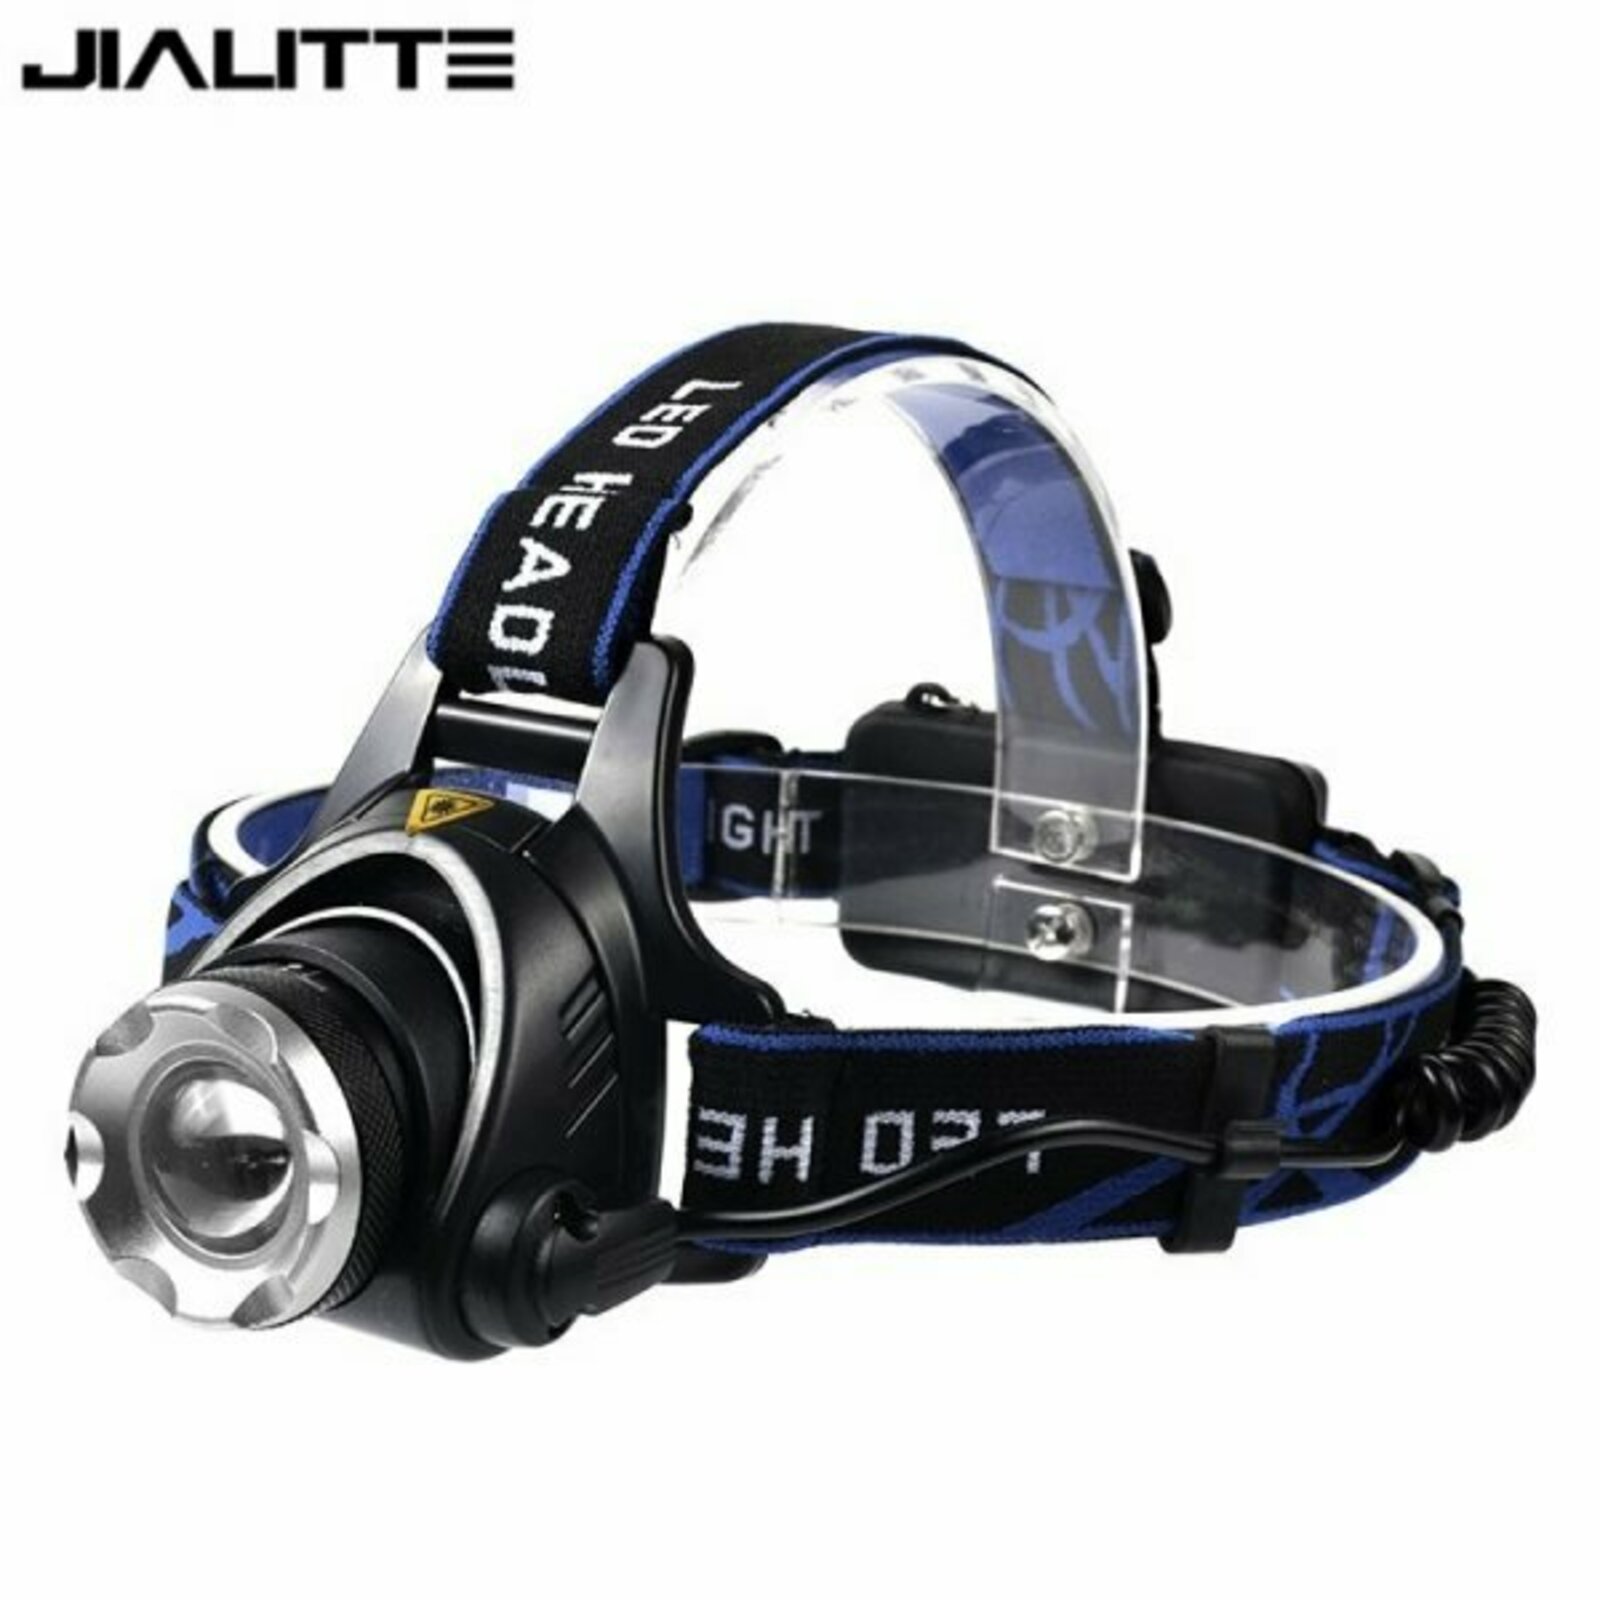 Кри 5. Налобный фонарь Jialitte h005 Focus. Налобный фонарь Jialitte h004. Налобный фонарь Jialitte h018. Klein налобный фонарик 8458.